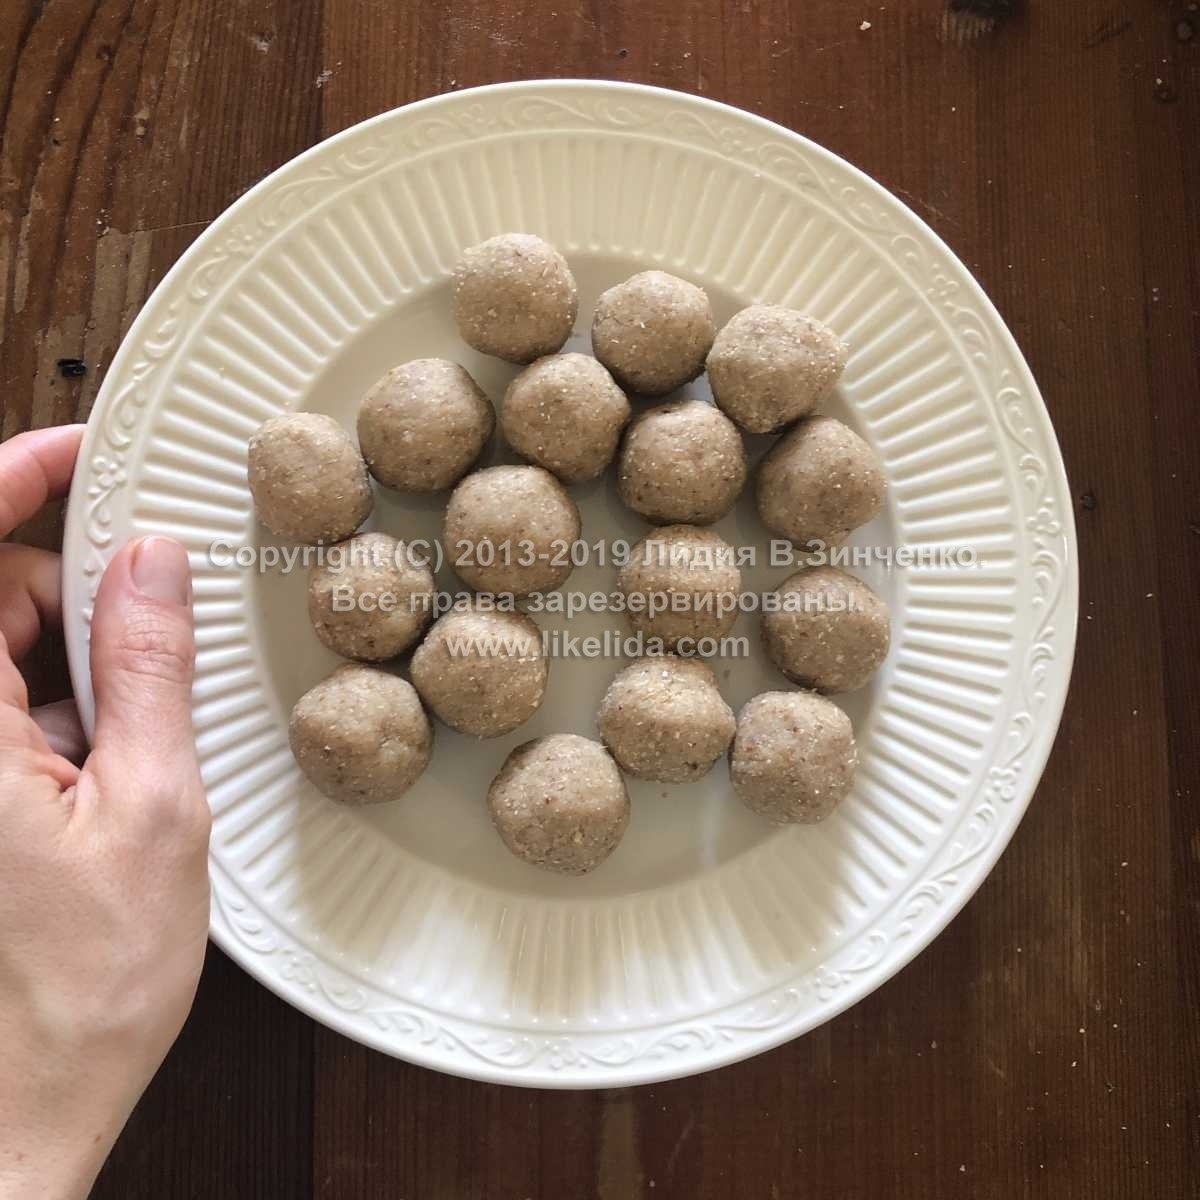 Cinnamon truffles with white chocolate (gluten-free, vegan, raw)